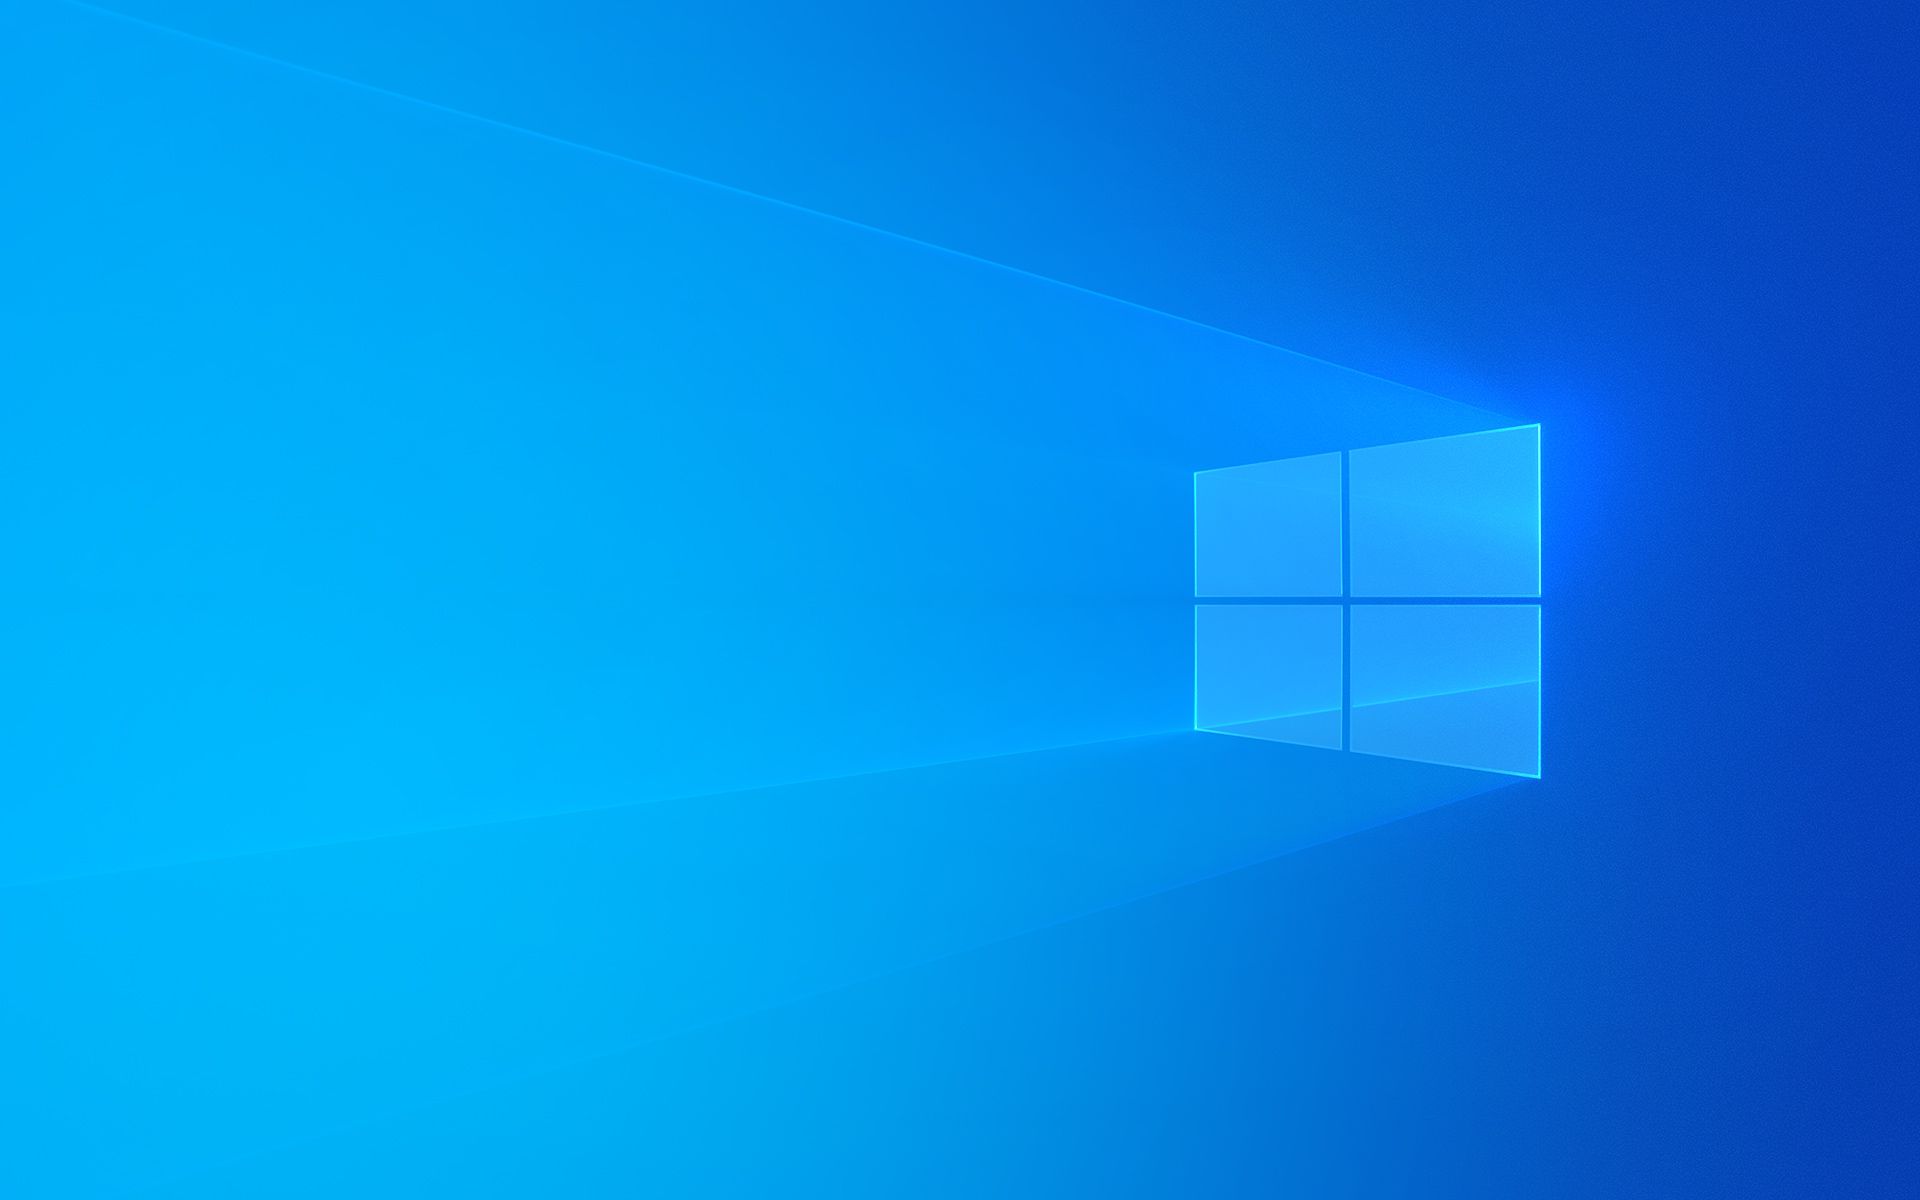 用U盘为戴尔笔记本安装Windows10参考教程——进入BIOS修改U盘为启动项进行系统安装